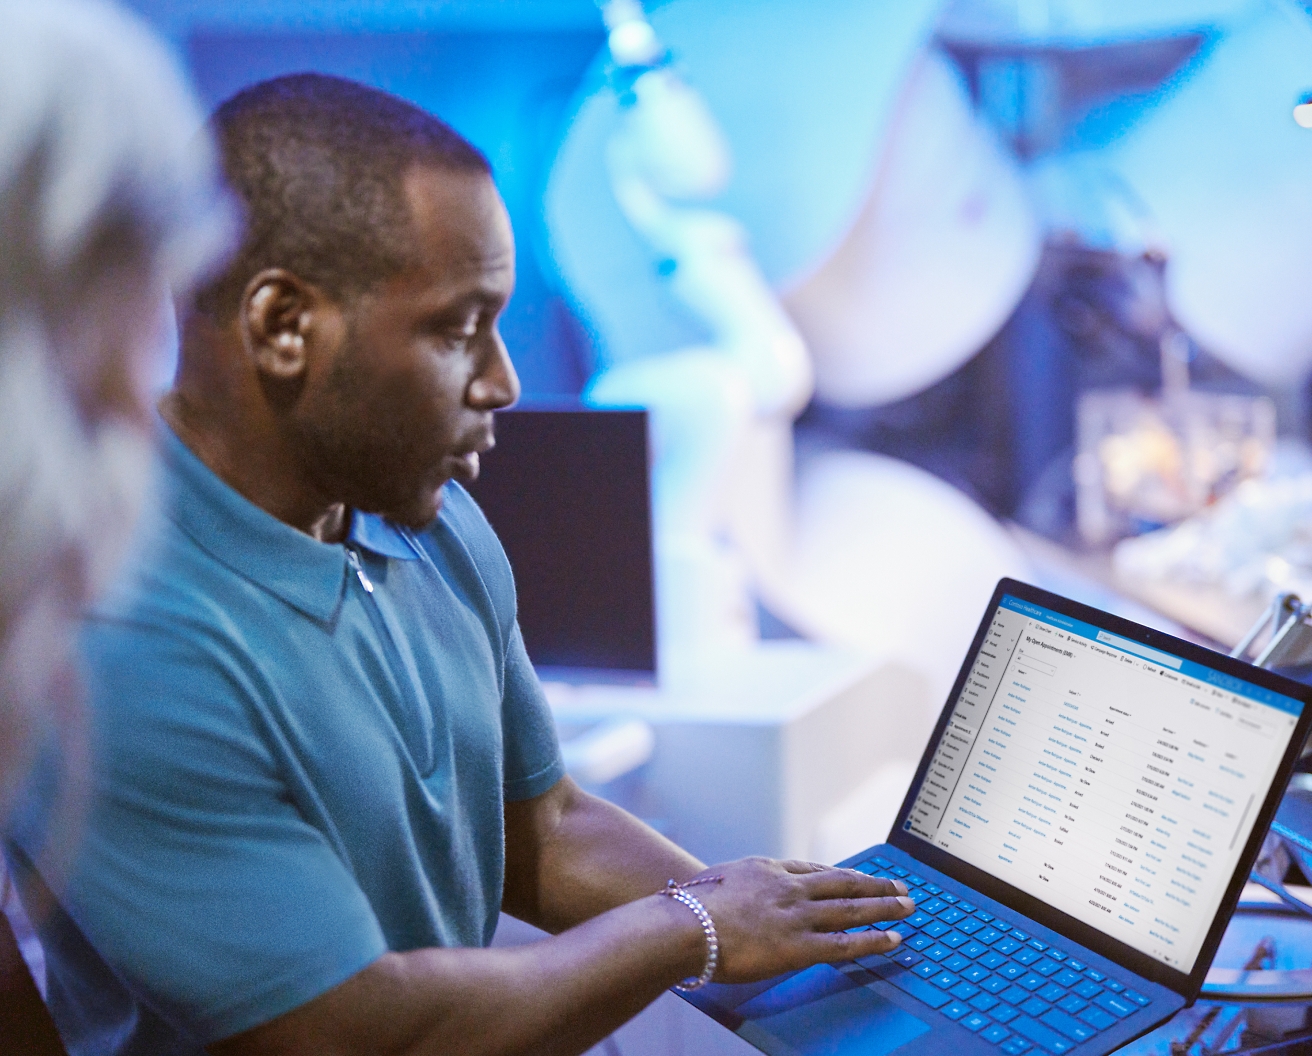 Ein Mann überprüft Daten auf einem Laptop umgeben von Kollegen in einer geschäftigen Büroumgebung.